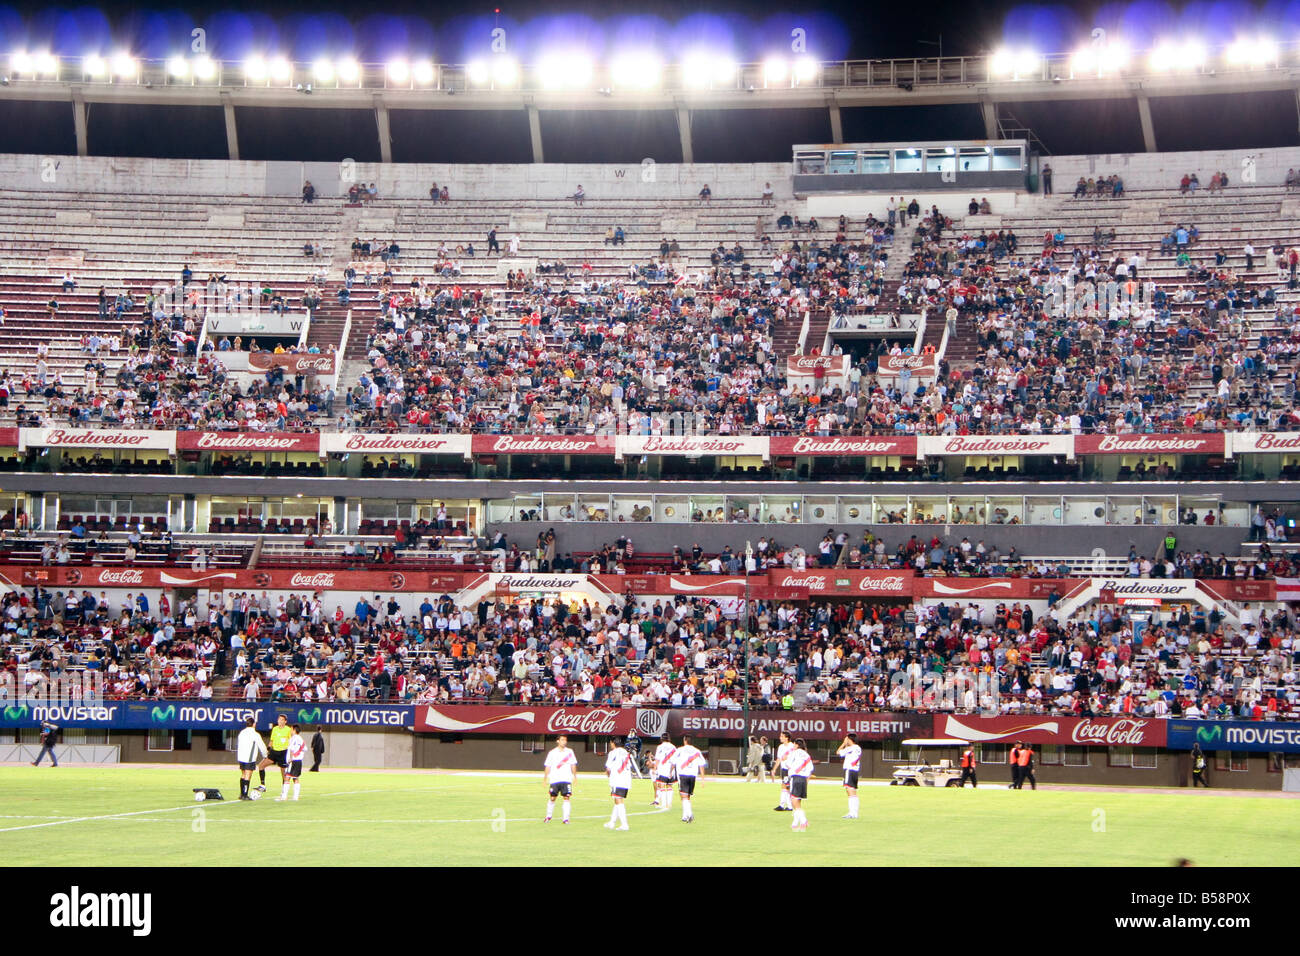 Spectators at the Estadio Monumental Antonio Vespucio Liberti football stadium Buenos Aires Argentina South America Stock Photo